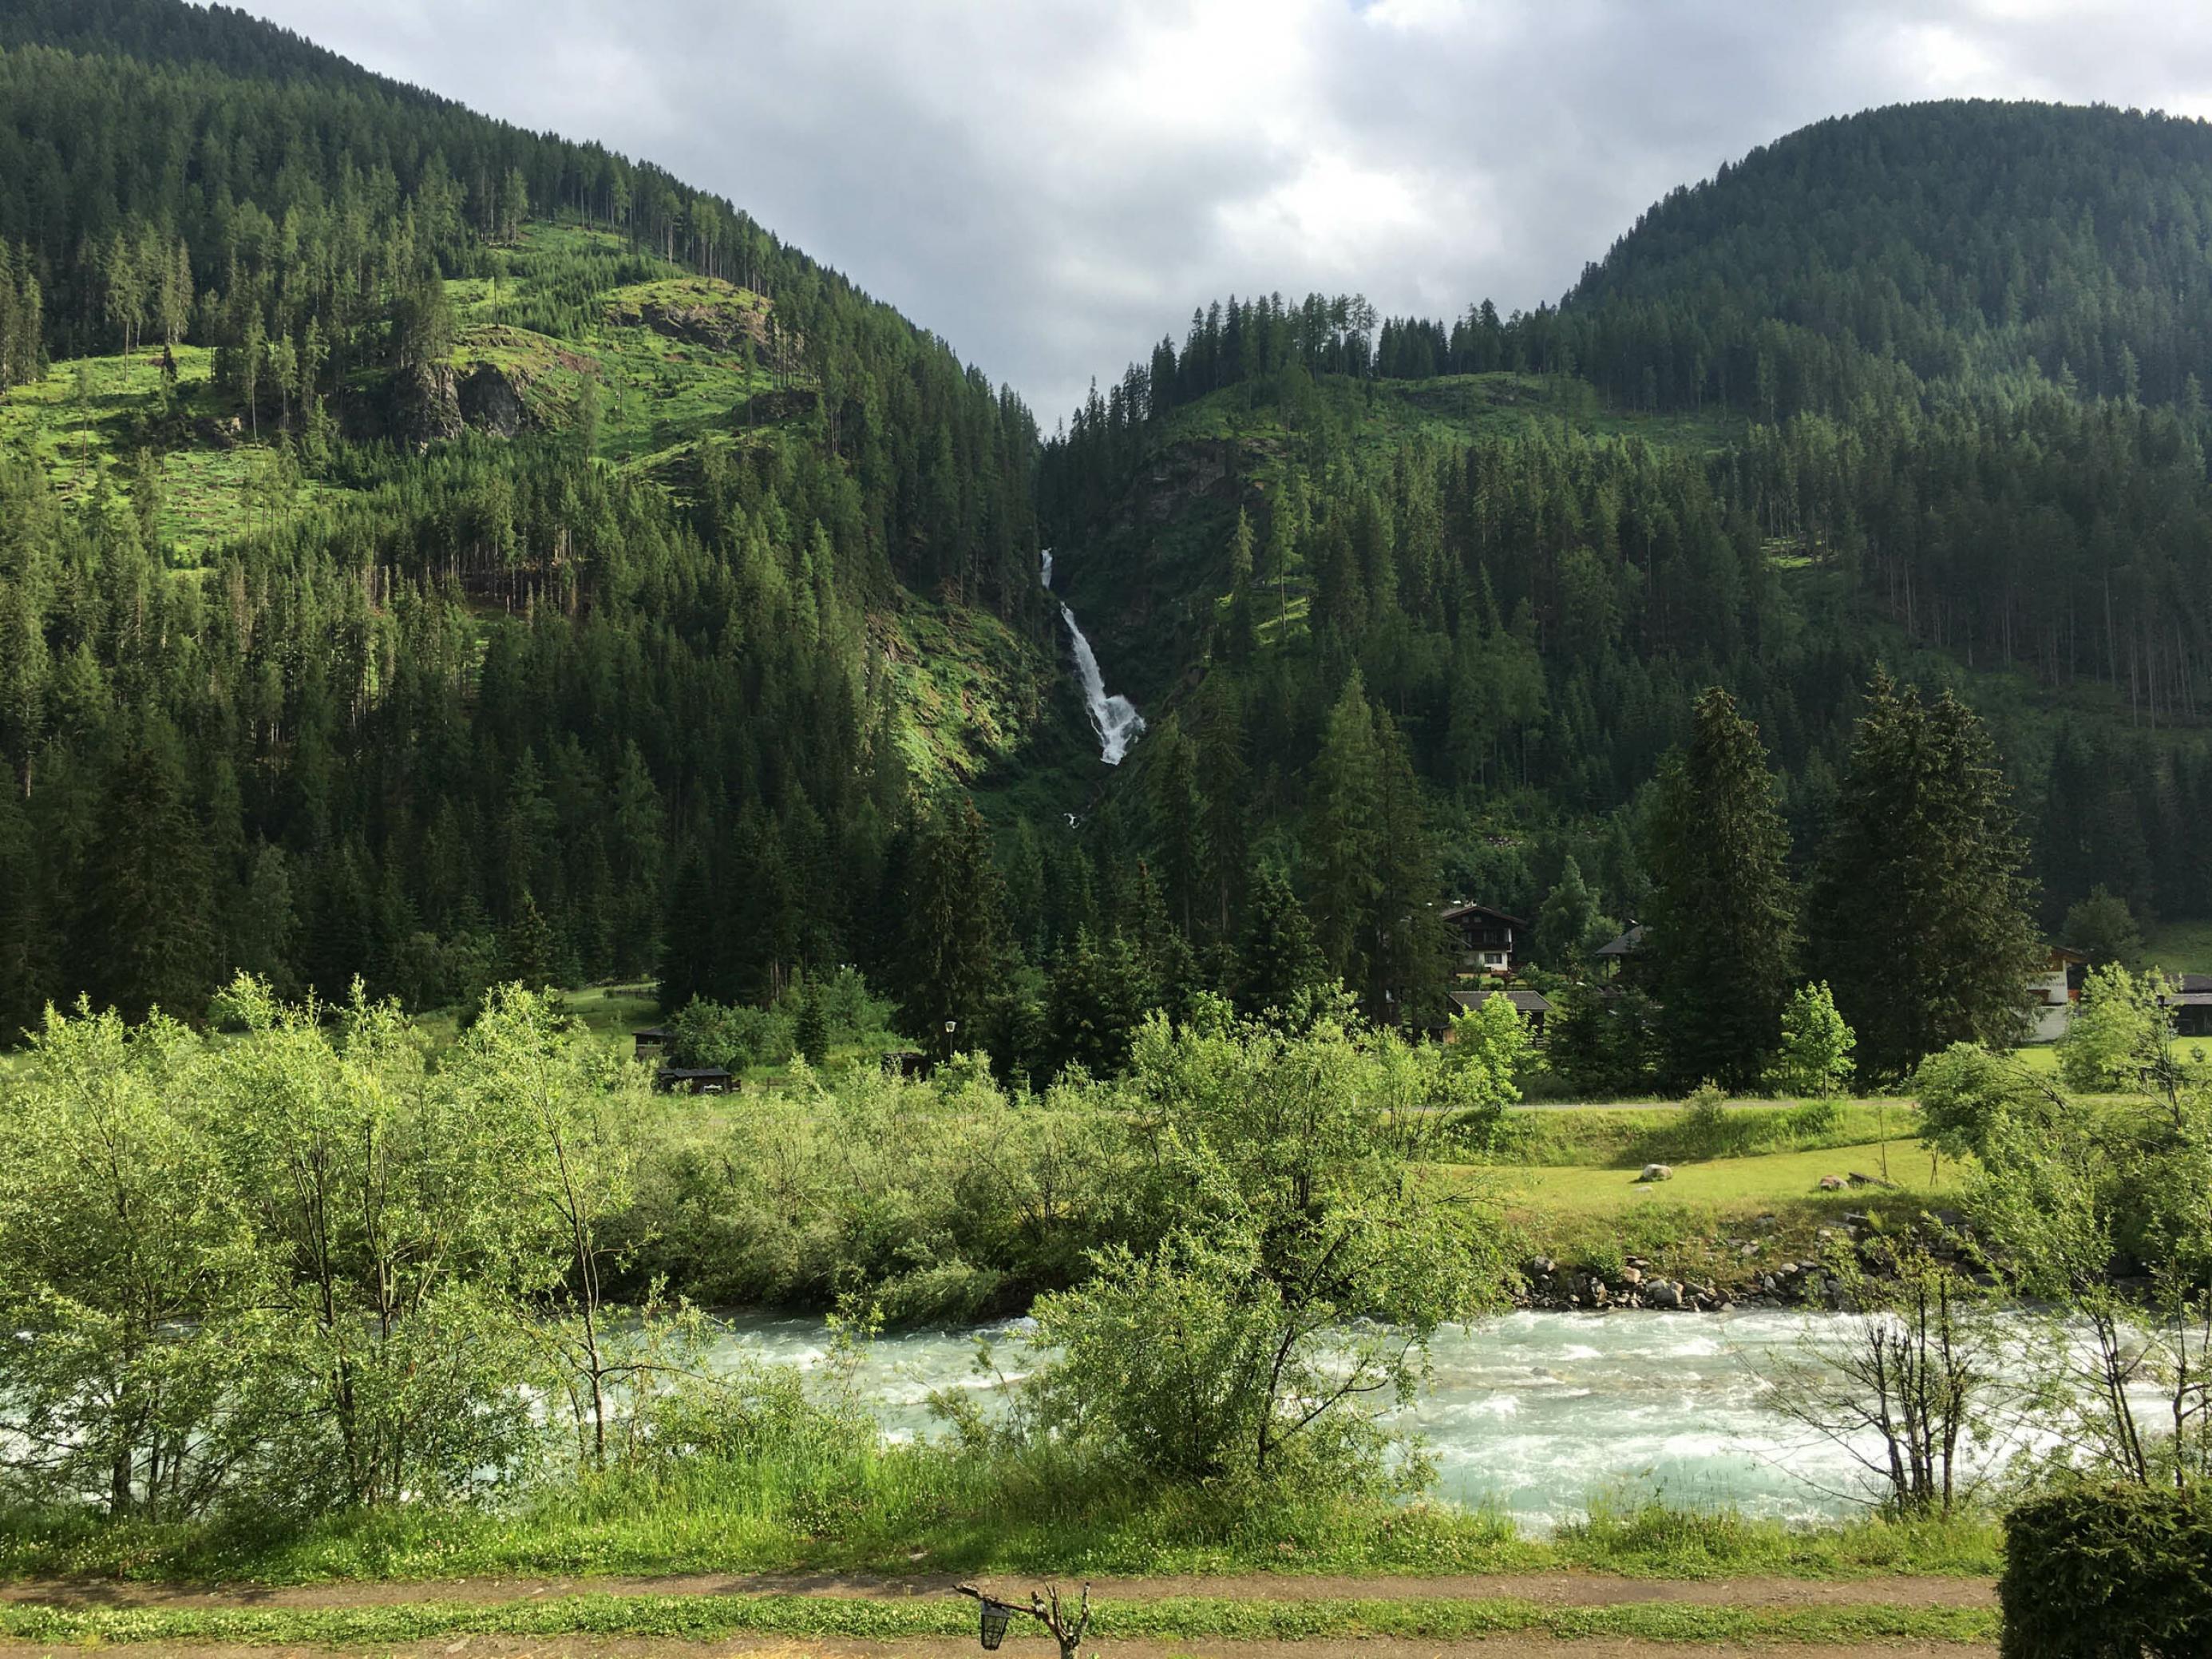 Quer im Bild ein Gebirgsbach mit Uferghölz, geradeaus Berge, Wald und ein hoher Wasserfall.